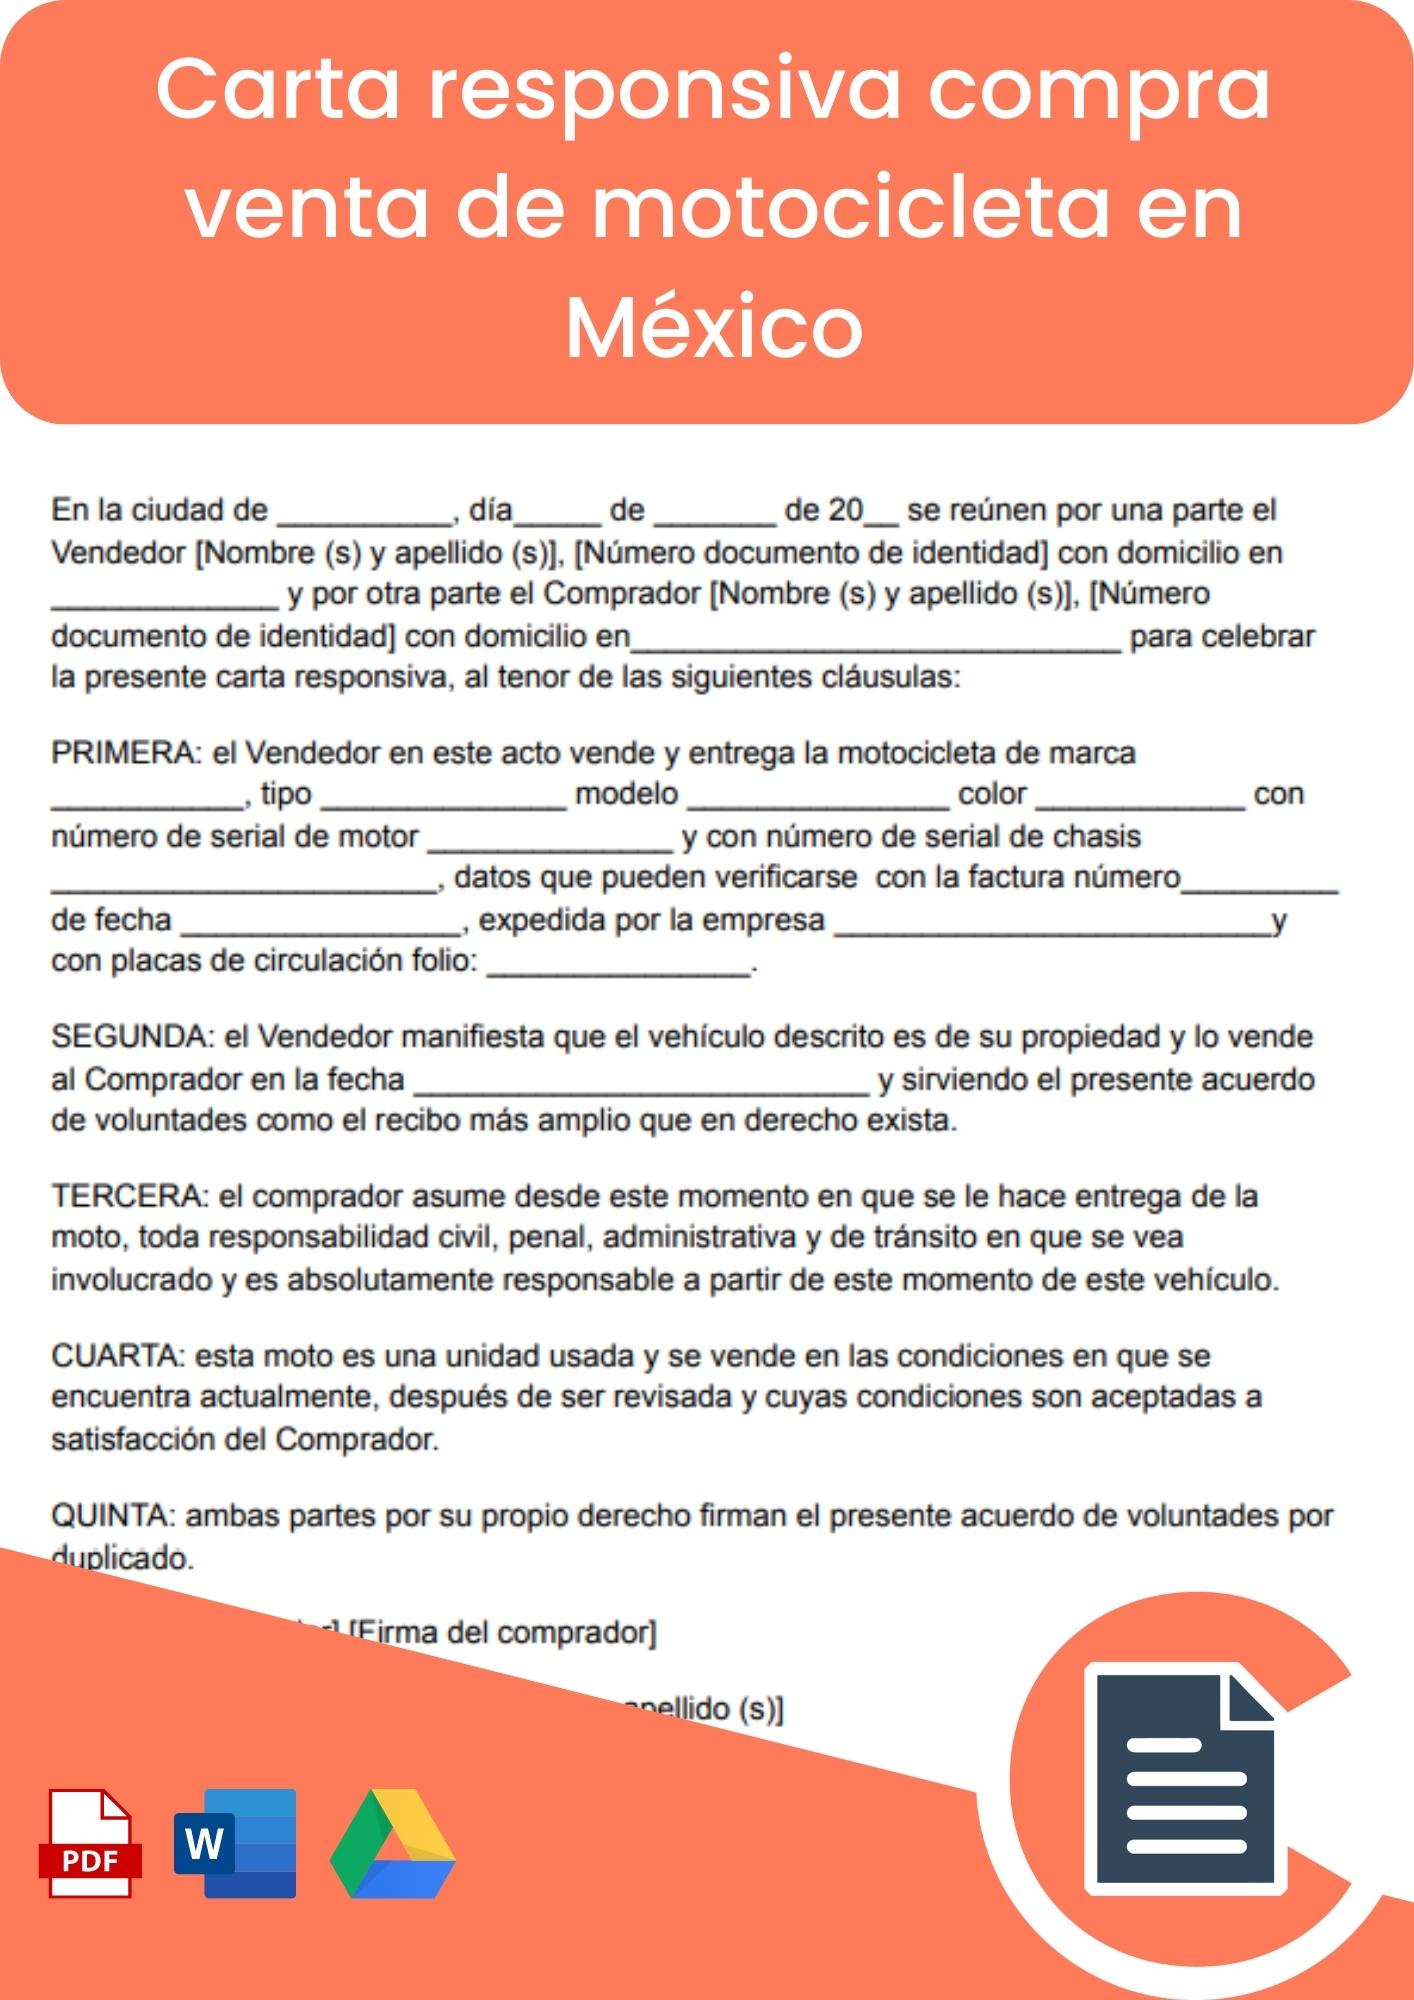 Carta responsiva compraventa motocicleta en Mexico